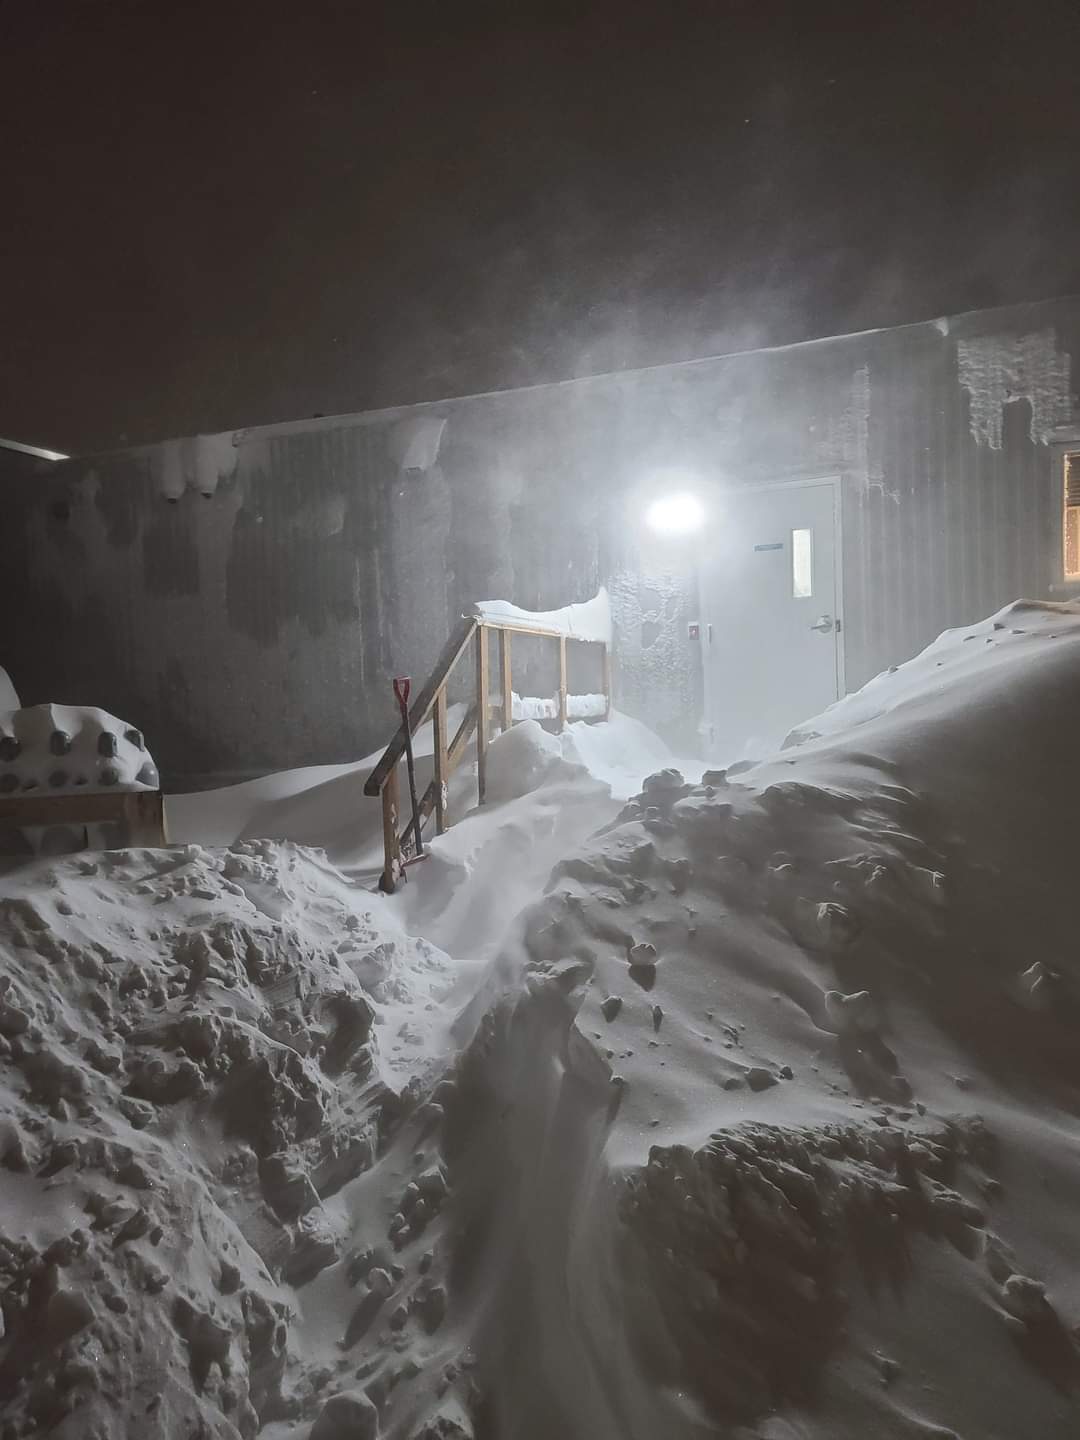 Hatalmas hóvihar, több méteres hófúvások Kanadában! Elképesztő felvételek! (Képek, Videók, Alberta) 2